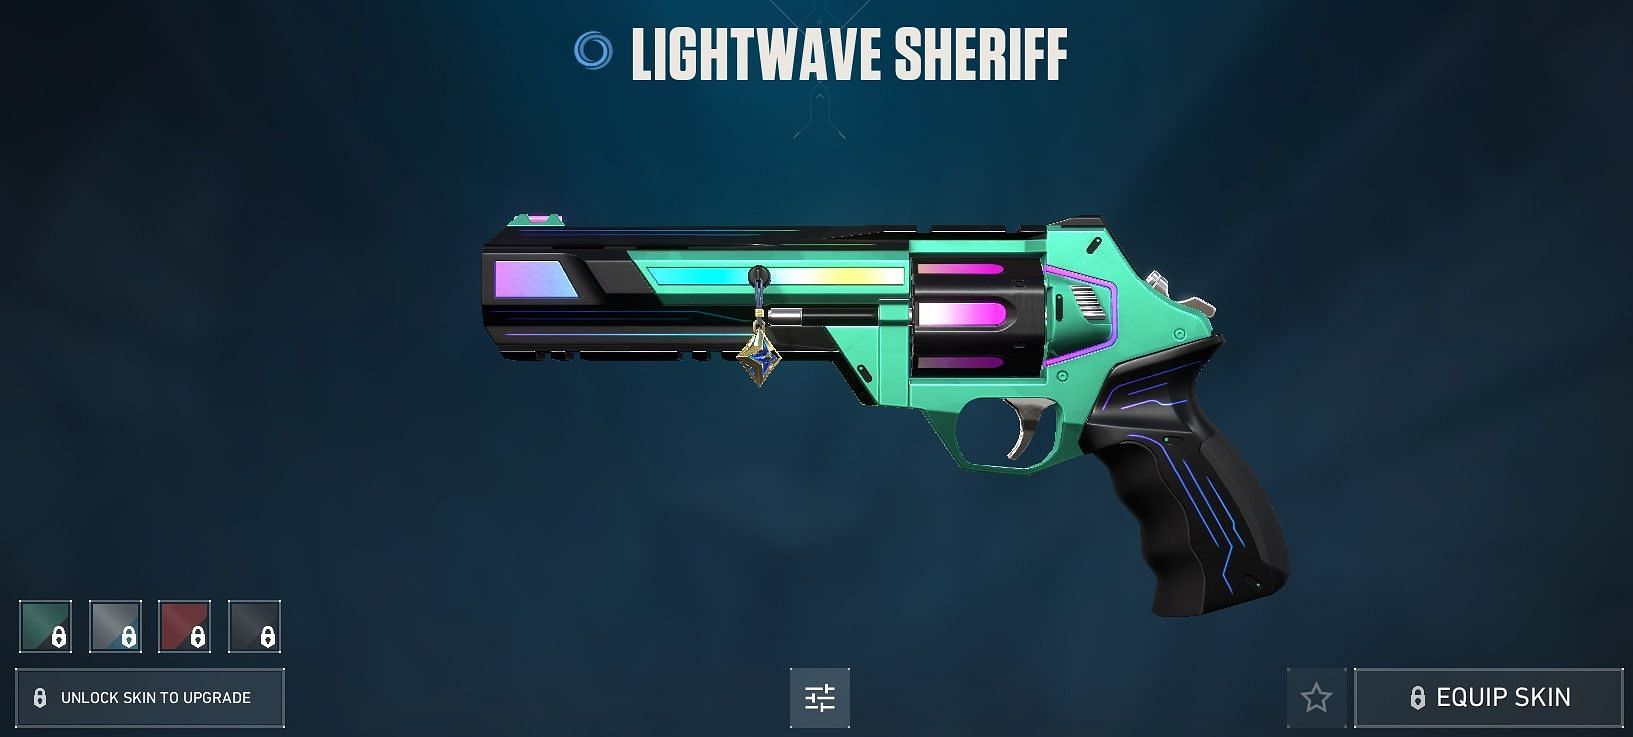 Lightwave Sheriff (Image via Riot Games)